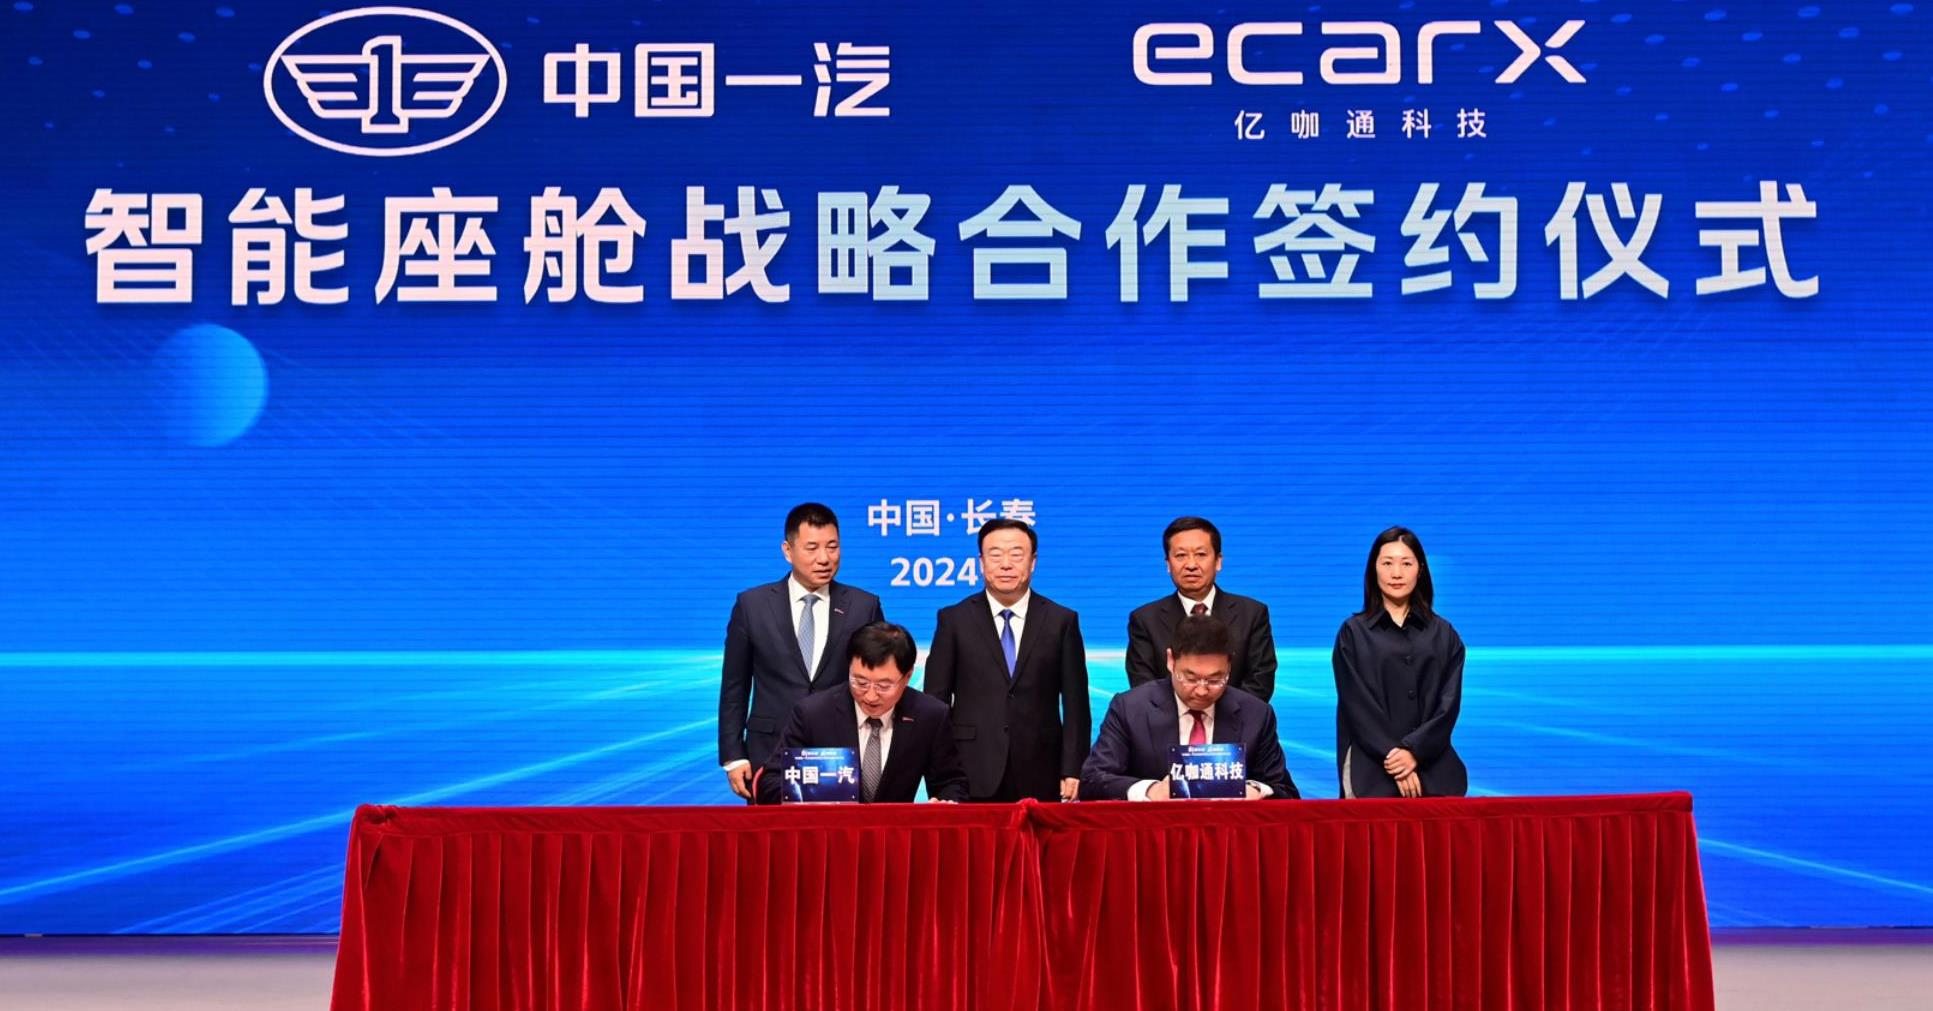 中国一汽与亿咖通科技签署智能座舱战略合作协议